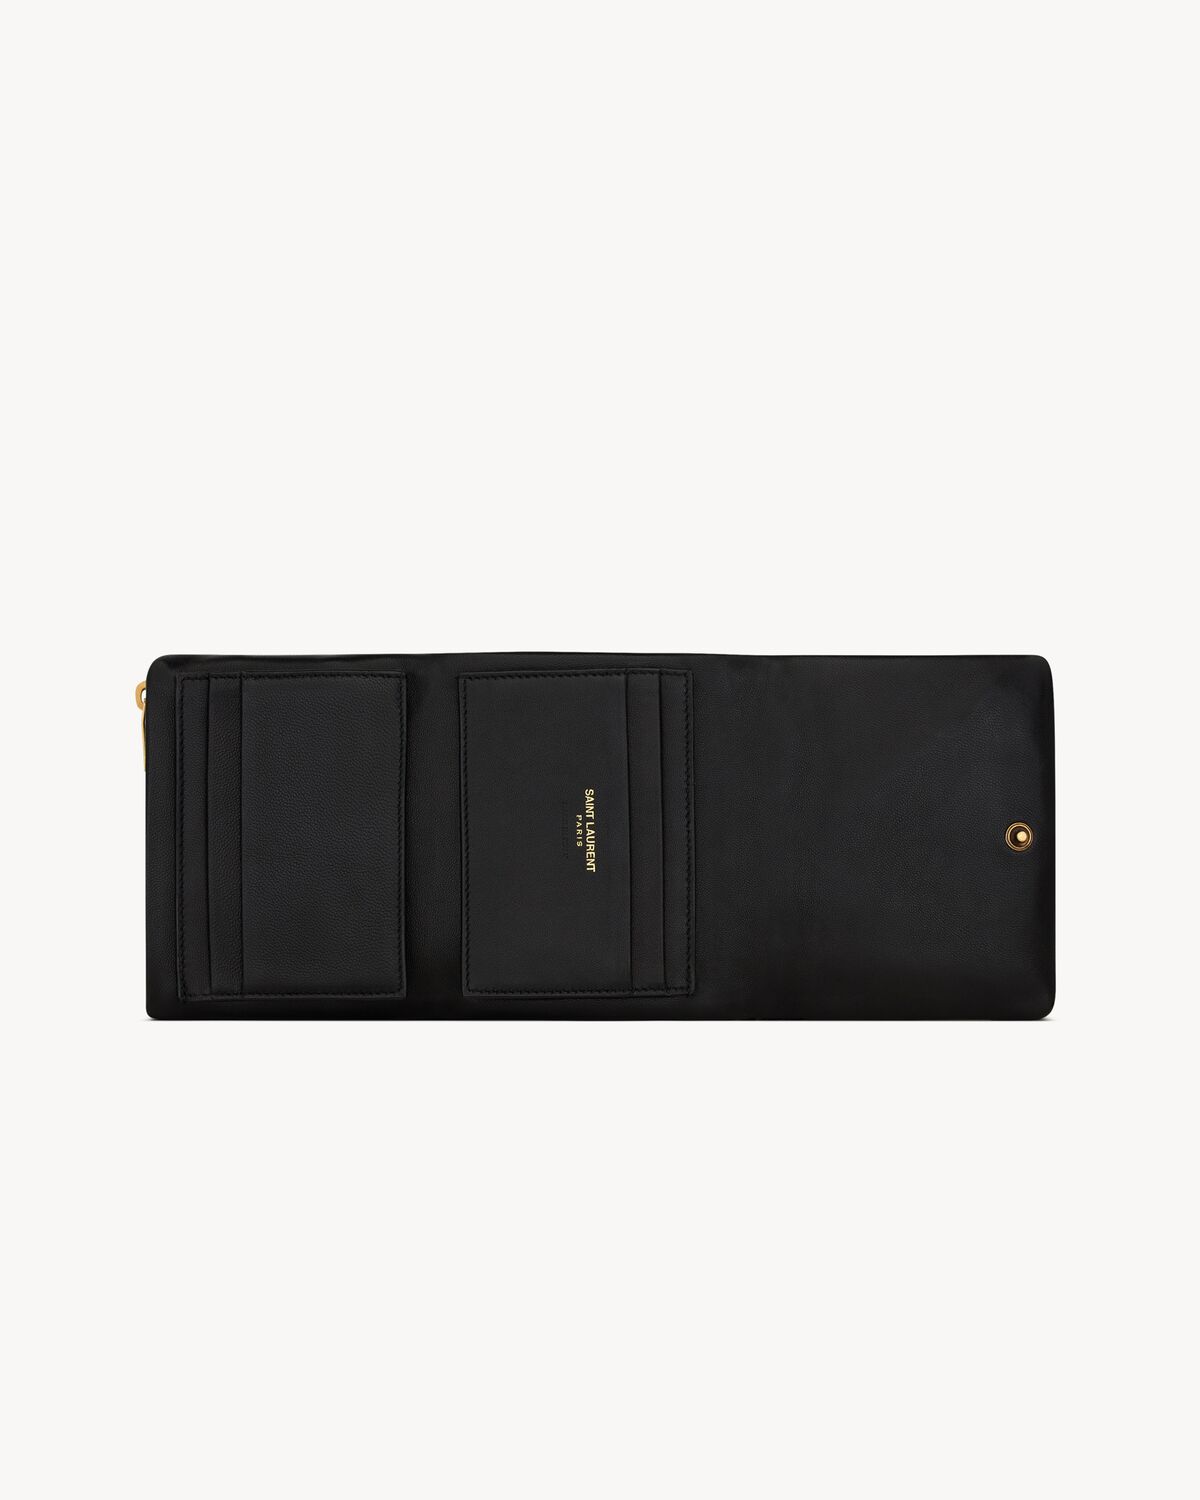 램스킨 소재의 CALYPSO 컴팩트 지갑